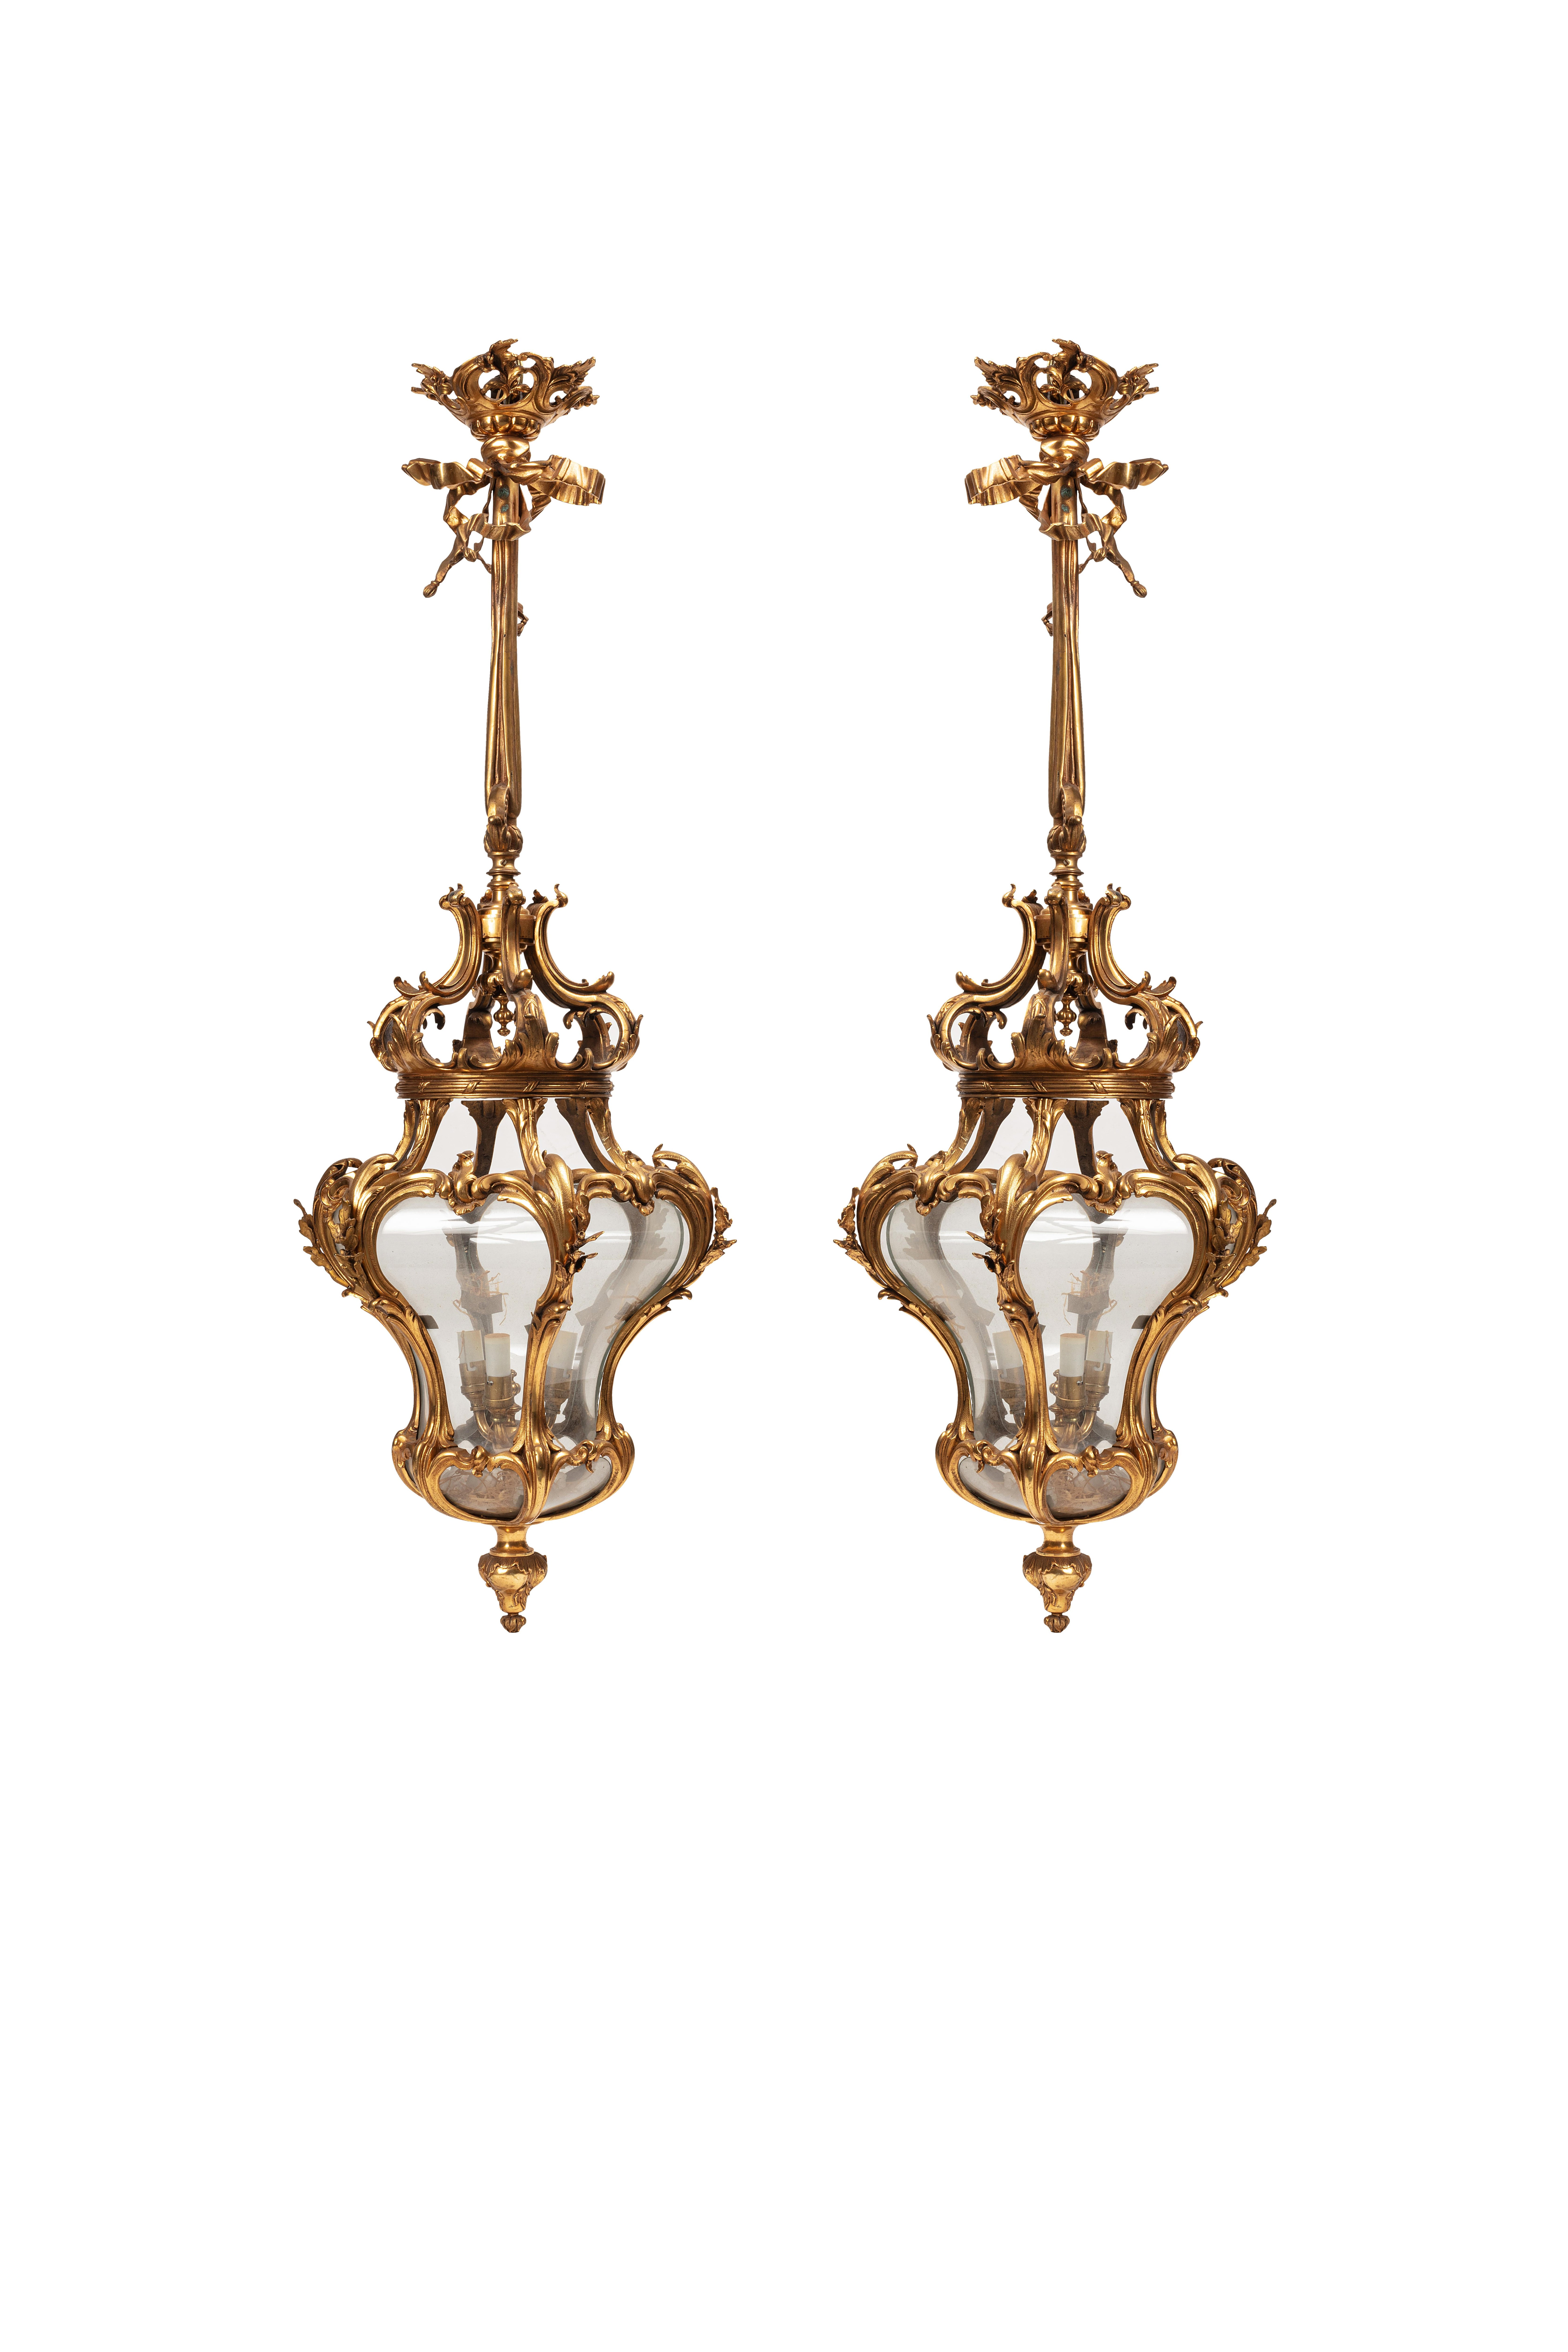 Sehr schönes Paar Laternen aus vergoldeter Bronze im Stil von Louis XV, durch ihre Form sind sie selten, elegant und nüchtern zugleich können sie einen Raum erstrahlen lassen